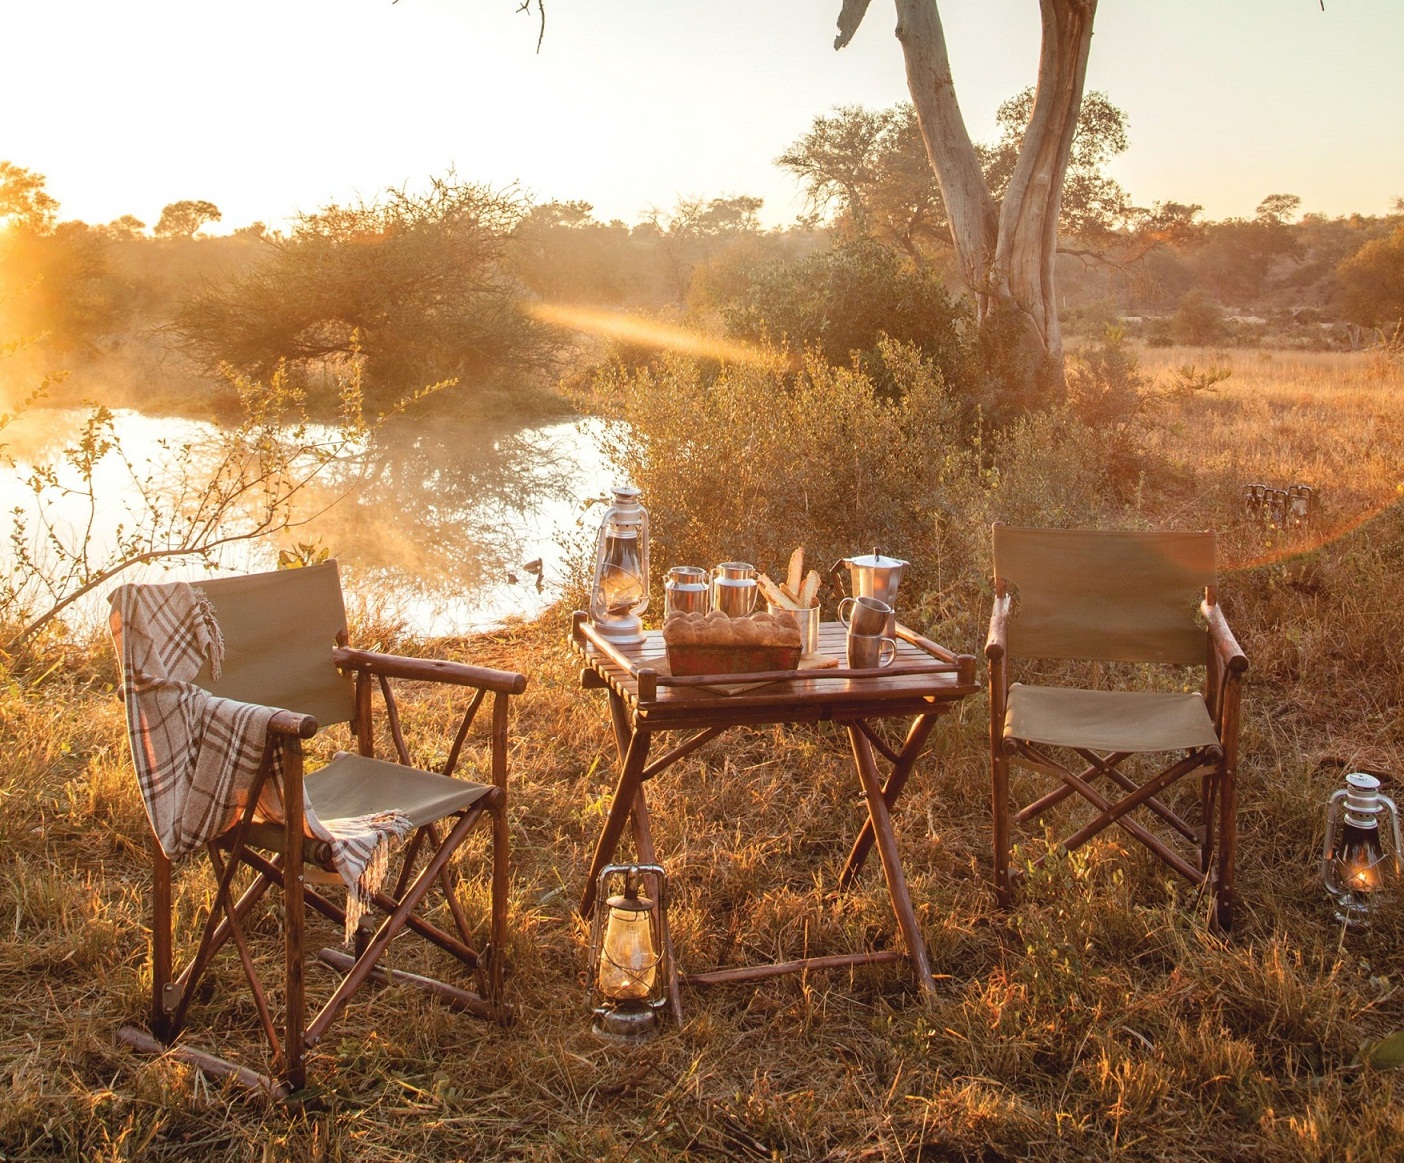 Ein Frühstück im Freien ist ein Highlight einer Safari in Afrika